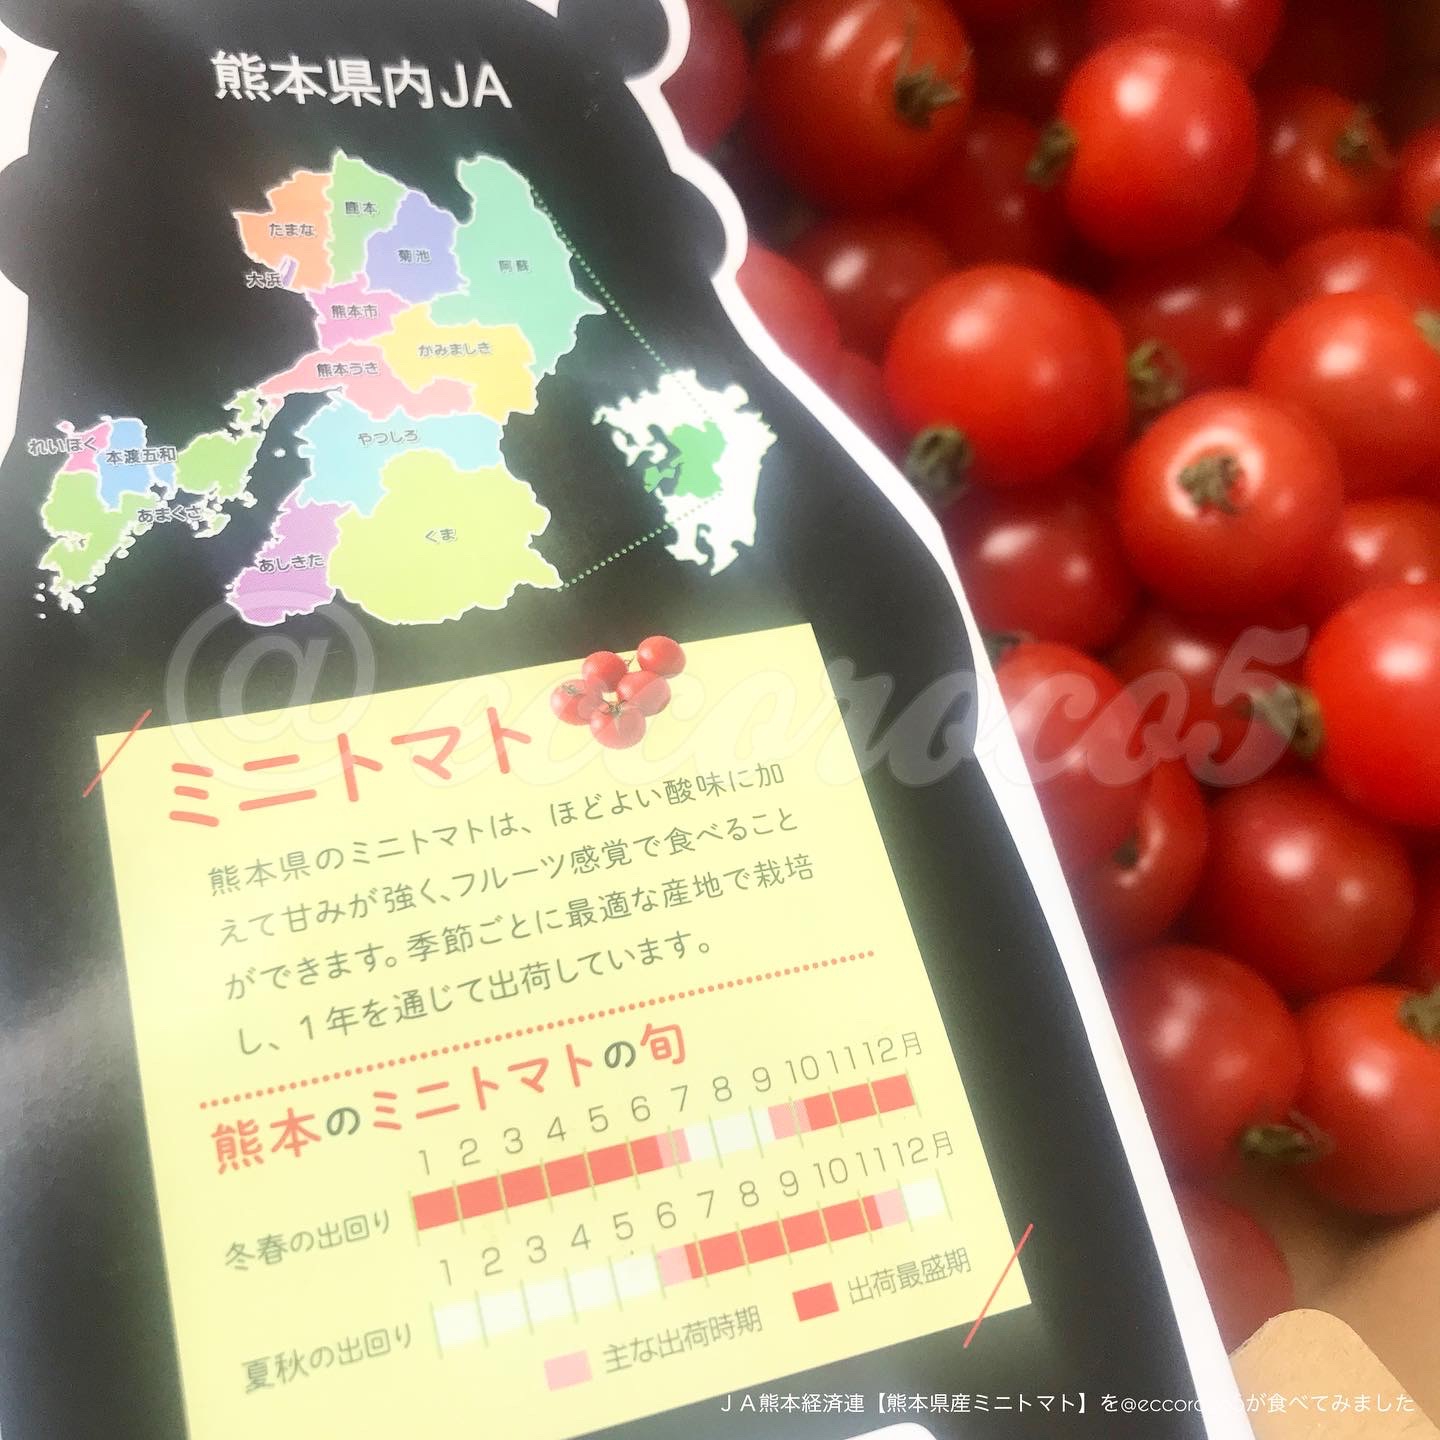 ＪＡ熊本経済連【熊本県産ミニトマト】を使った@eccoroco5さんのクチコミ画像6